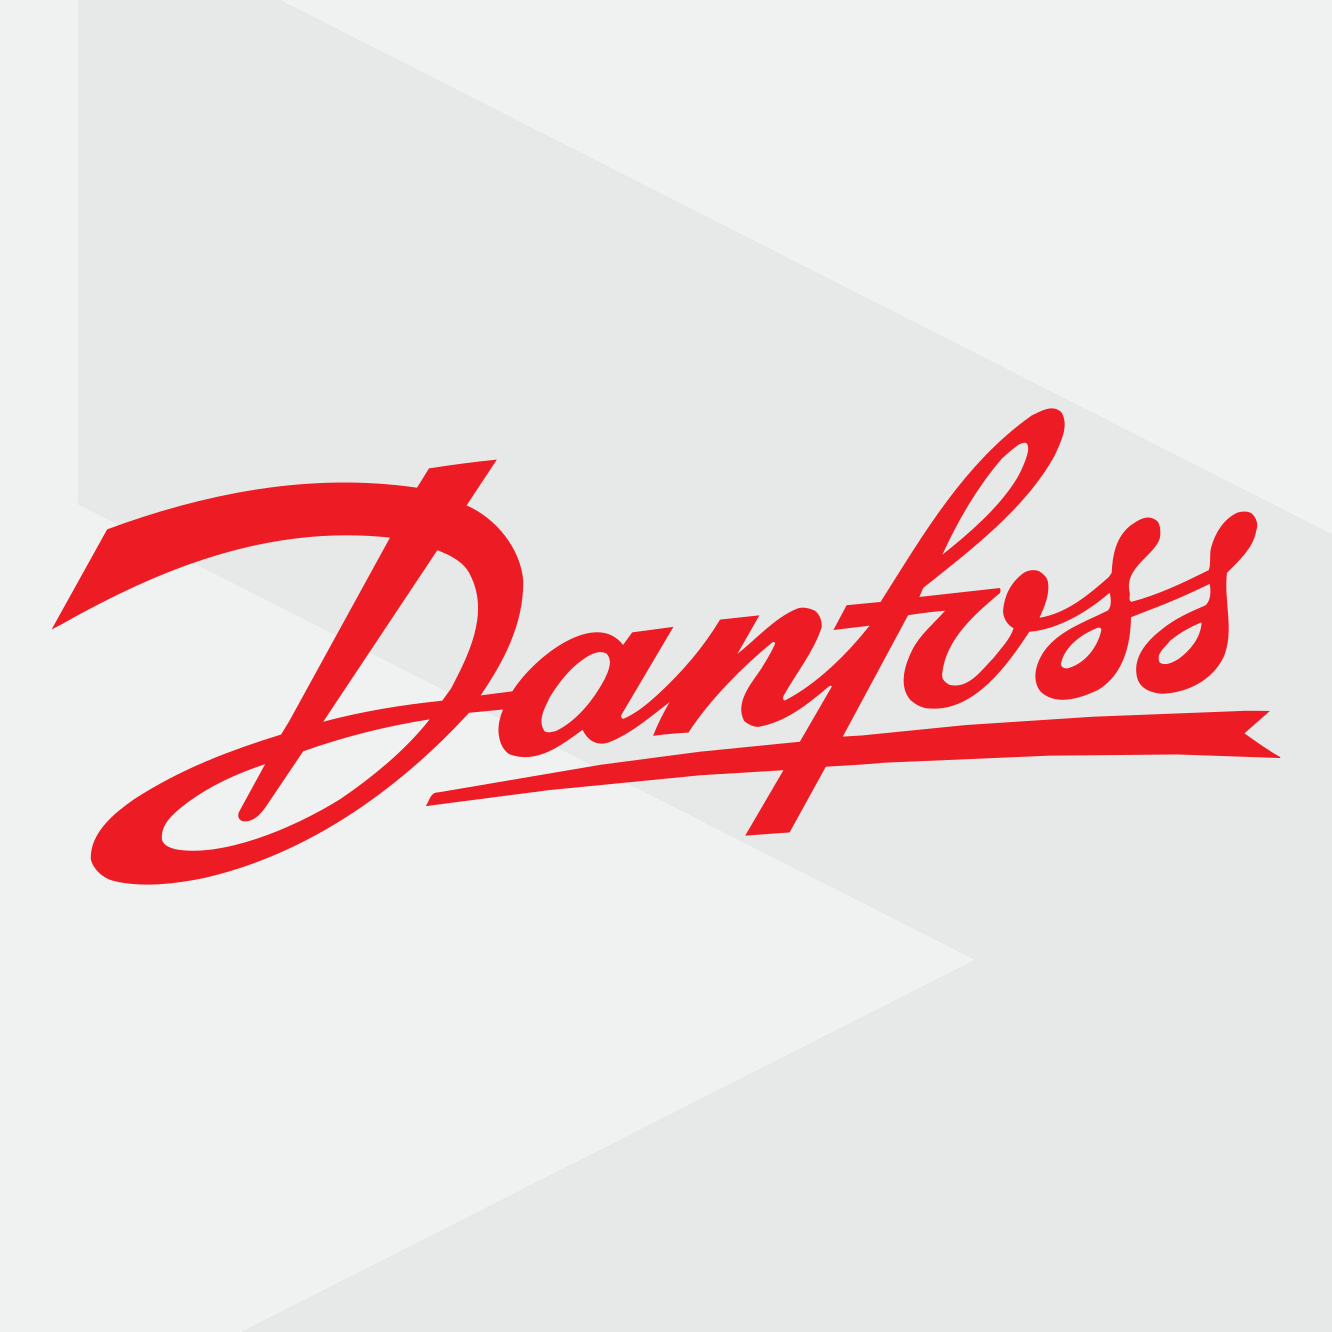 Danfoss case study